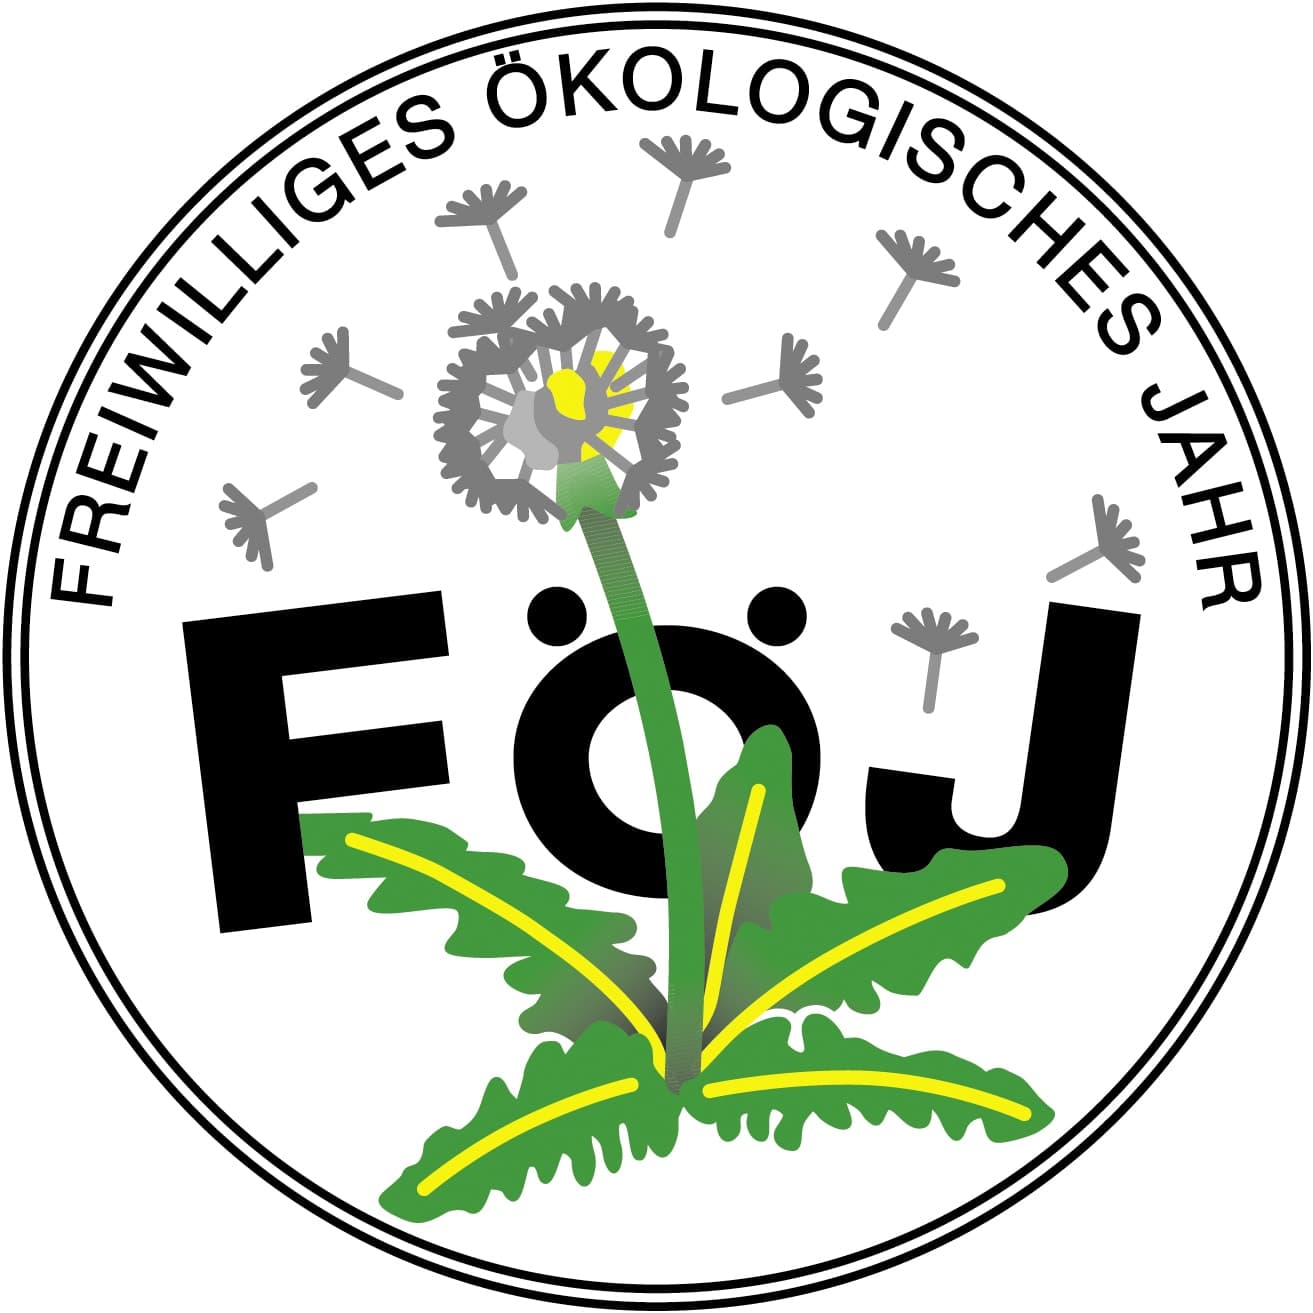 Förderverein Ökologische Freiwilligendienste (FÖF) e. V.-logo